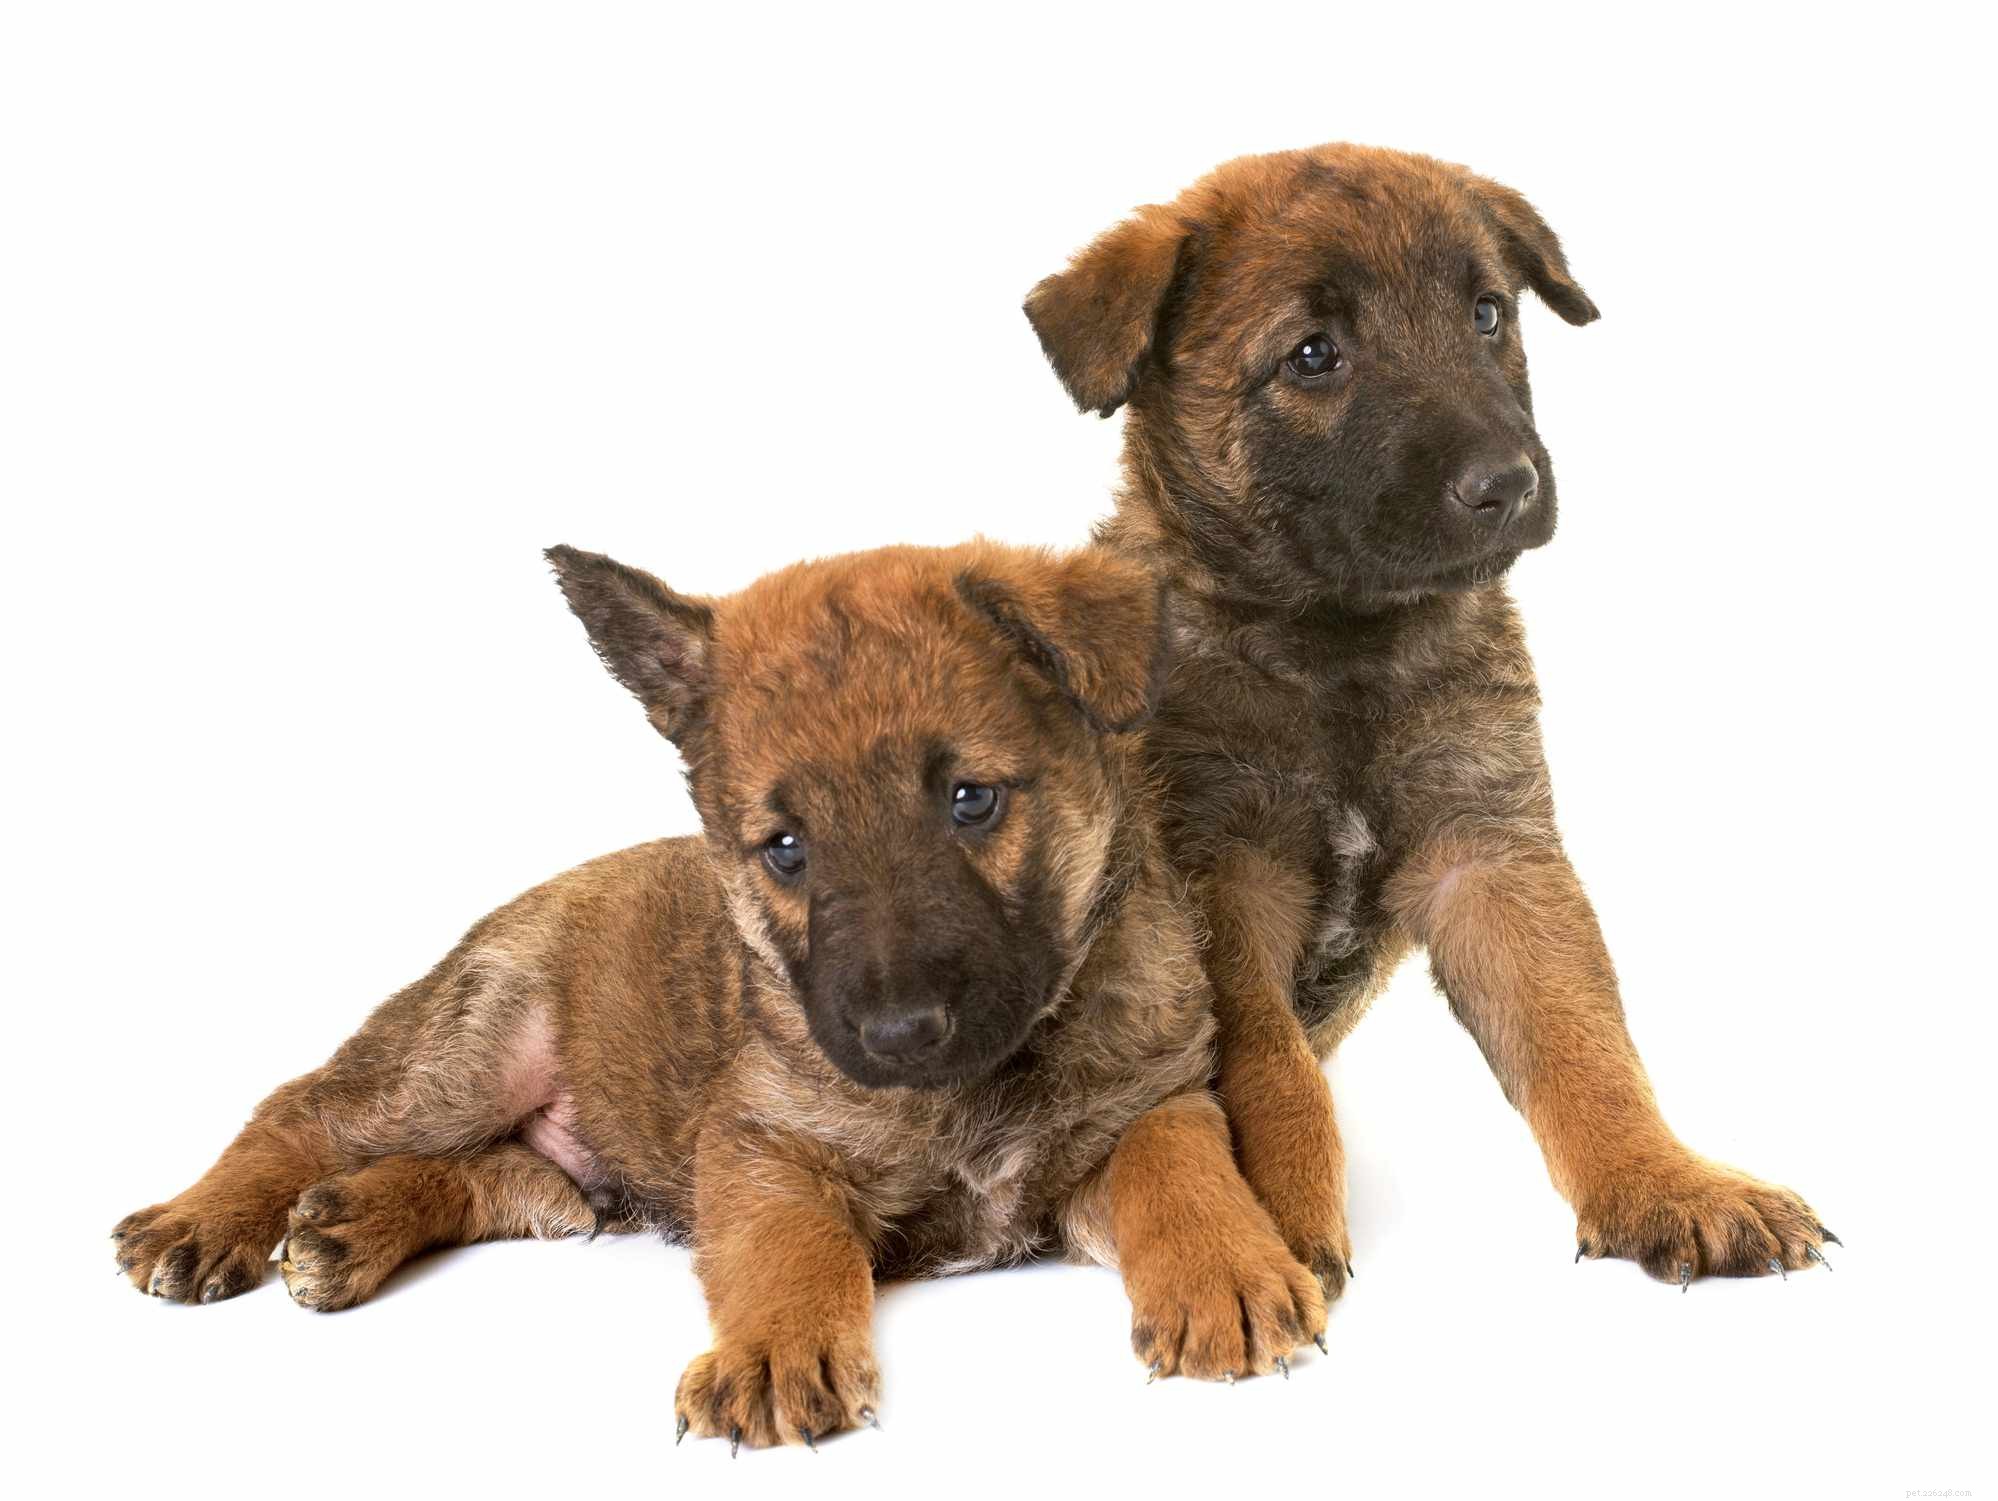 Бельгийский лакенуа:Профиль породы собак